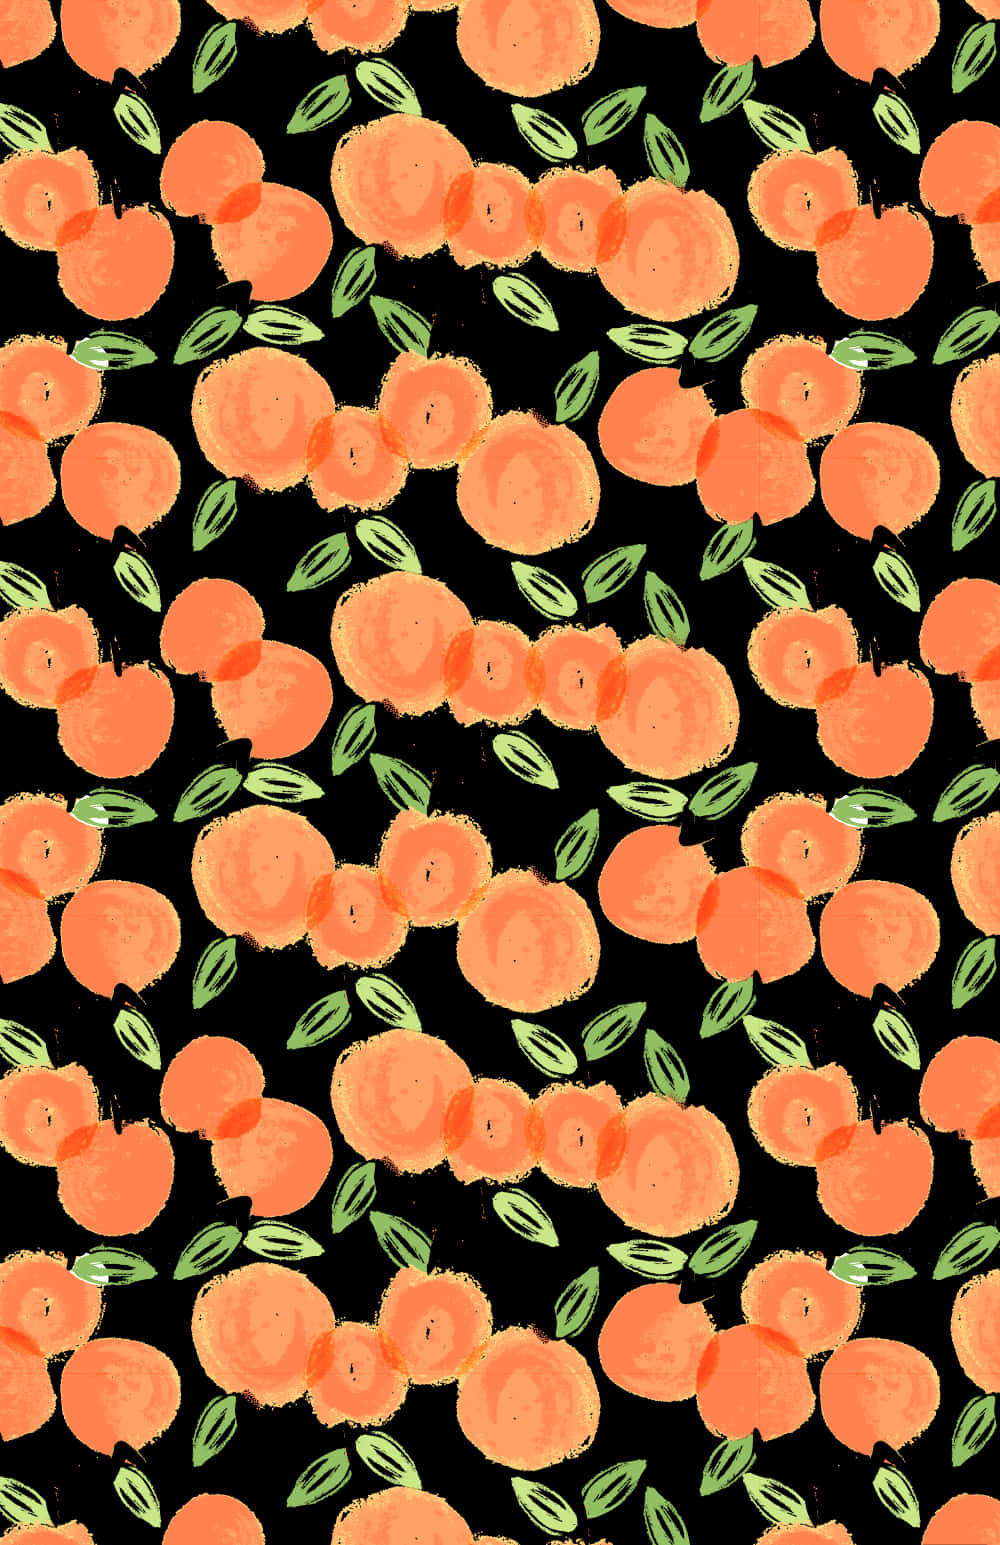 Ennärbild Av En Ljus Och Färgstark Apelsin. Wallpaper